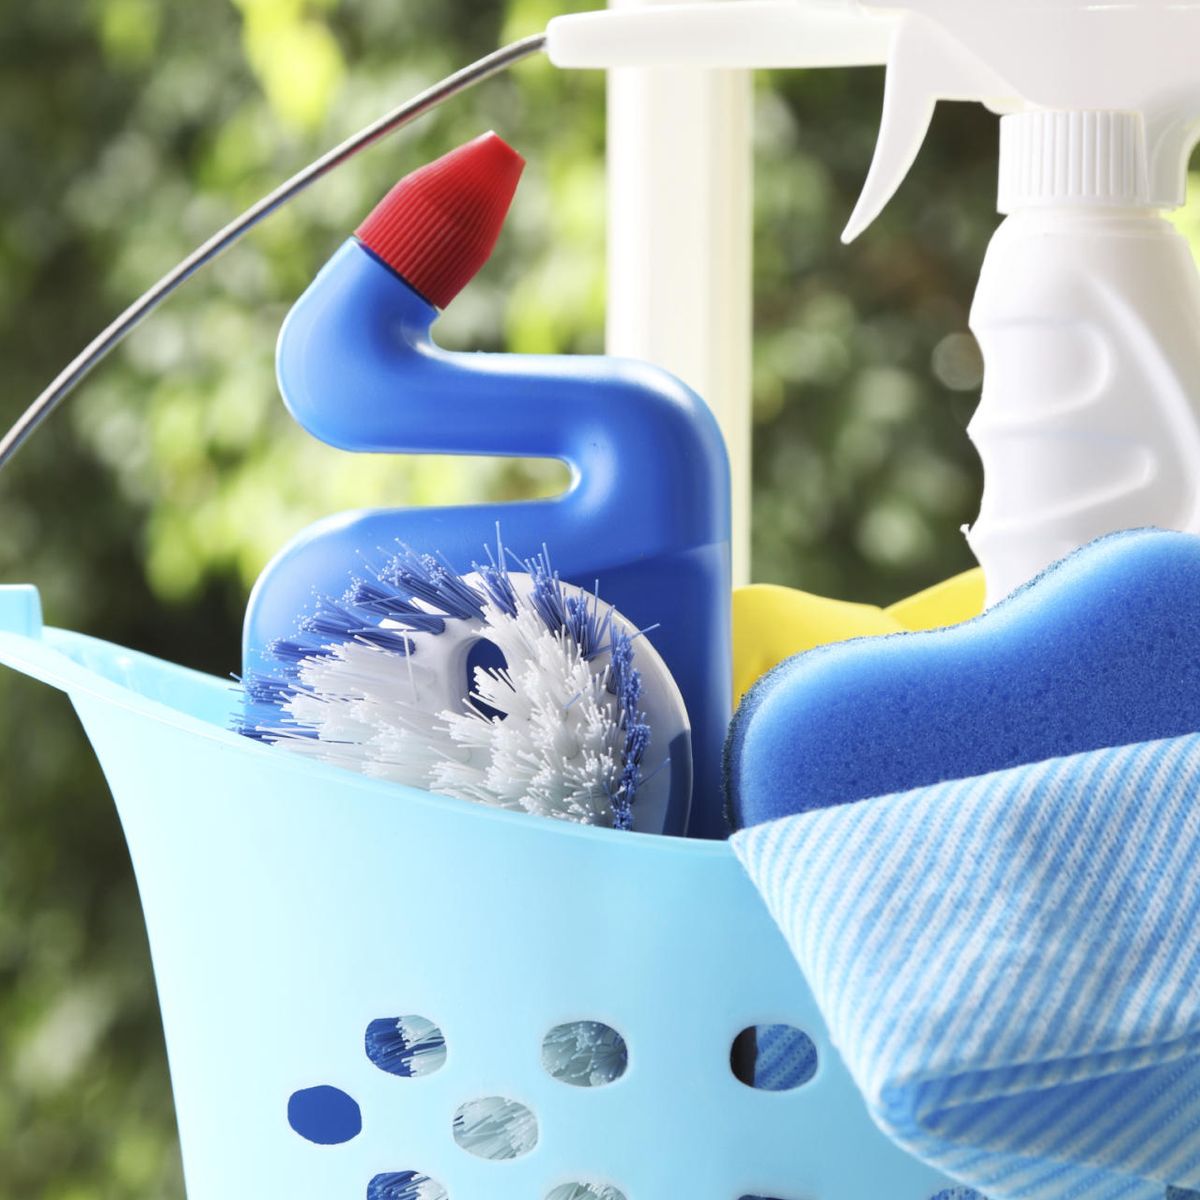 PRODUCTOS QUIMICOS DEL HOGAR  Productos de limpieza caseros, Limpieza,  Ingredientes